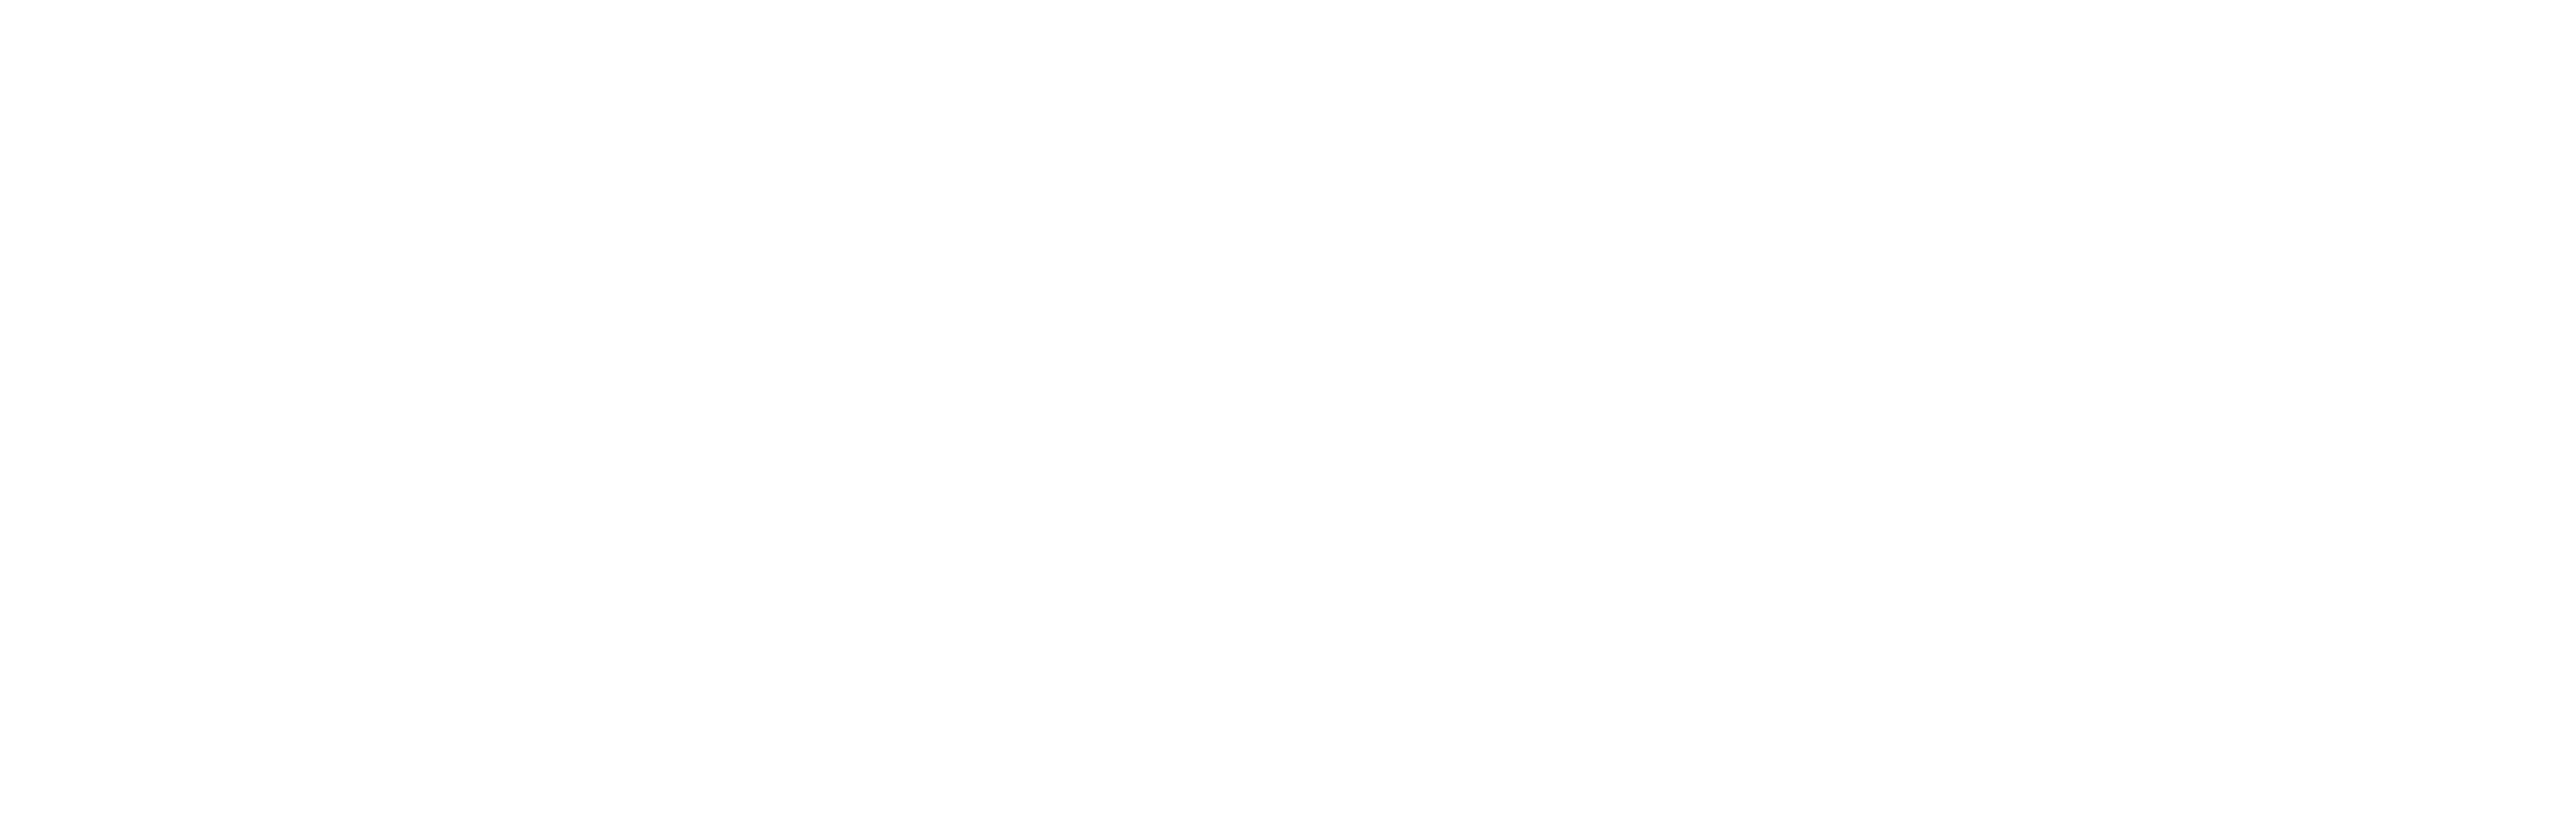 flexilabs-logo white